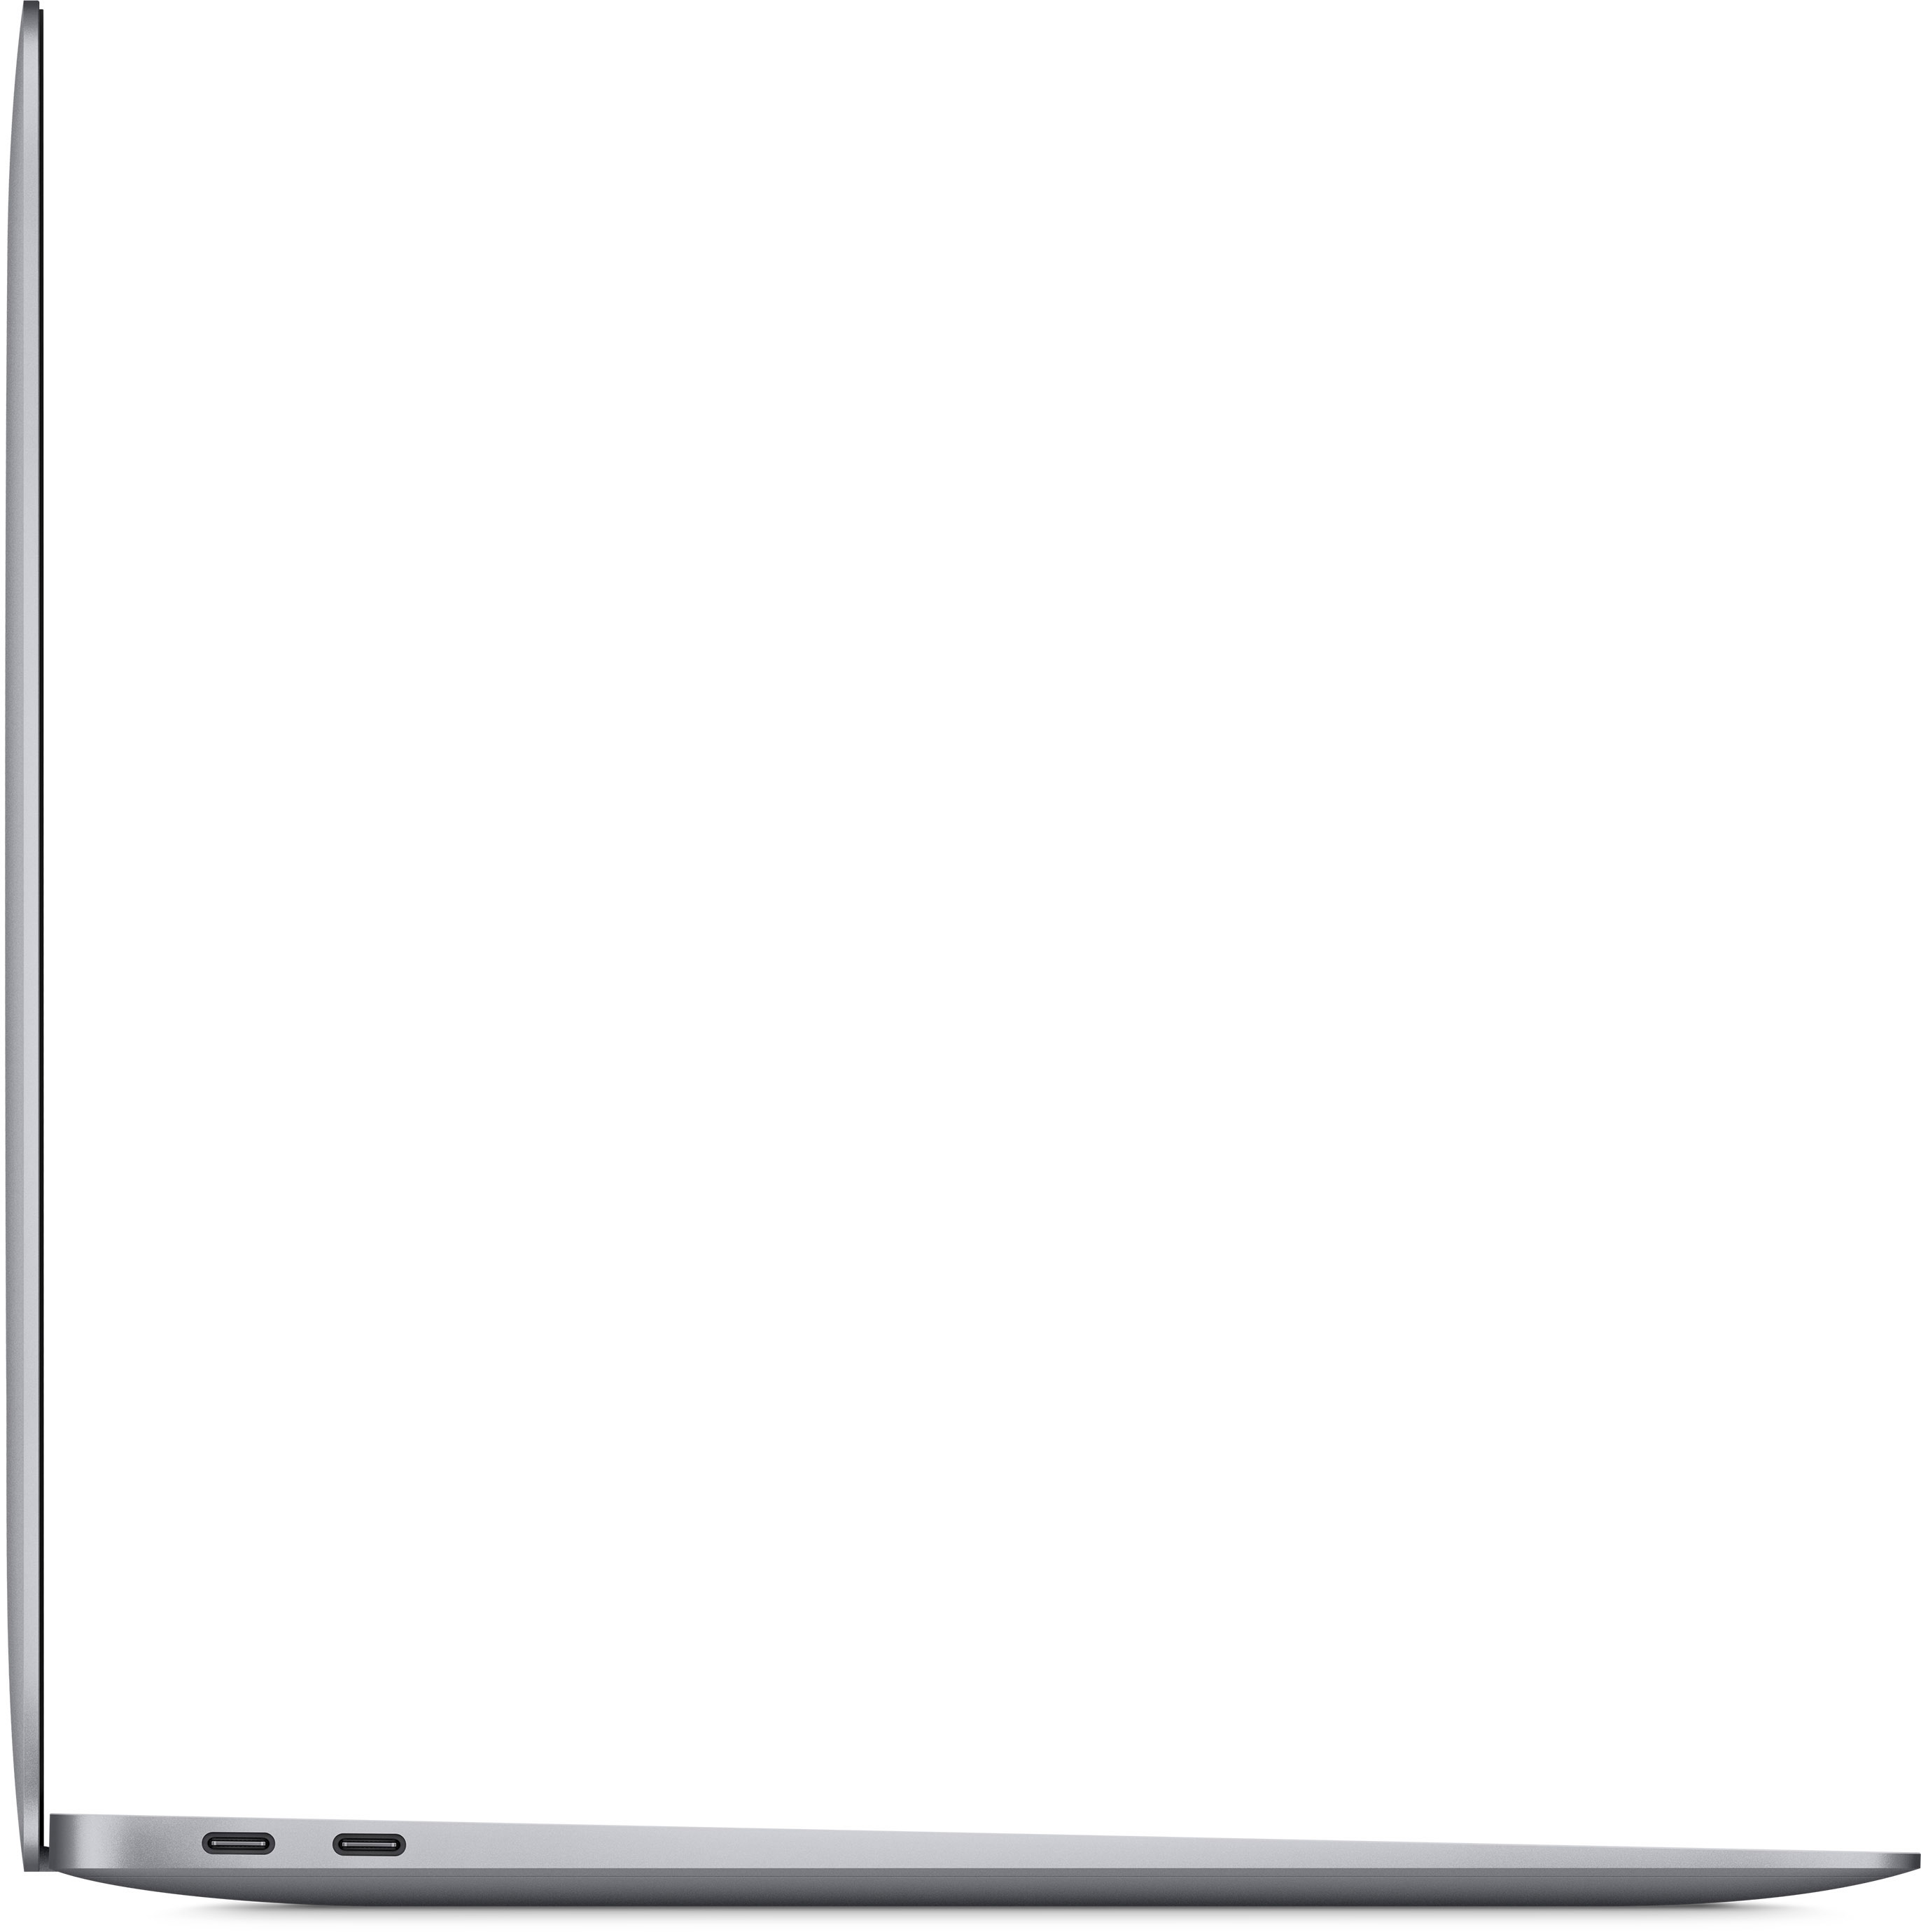 Apple macbook air m1 ssd retina display replacement screen